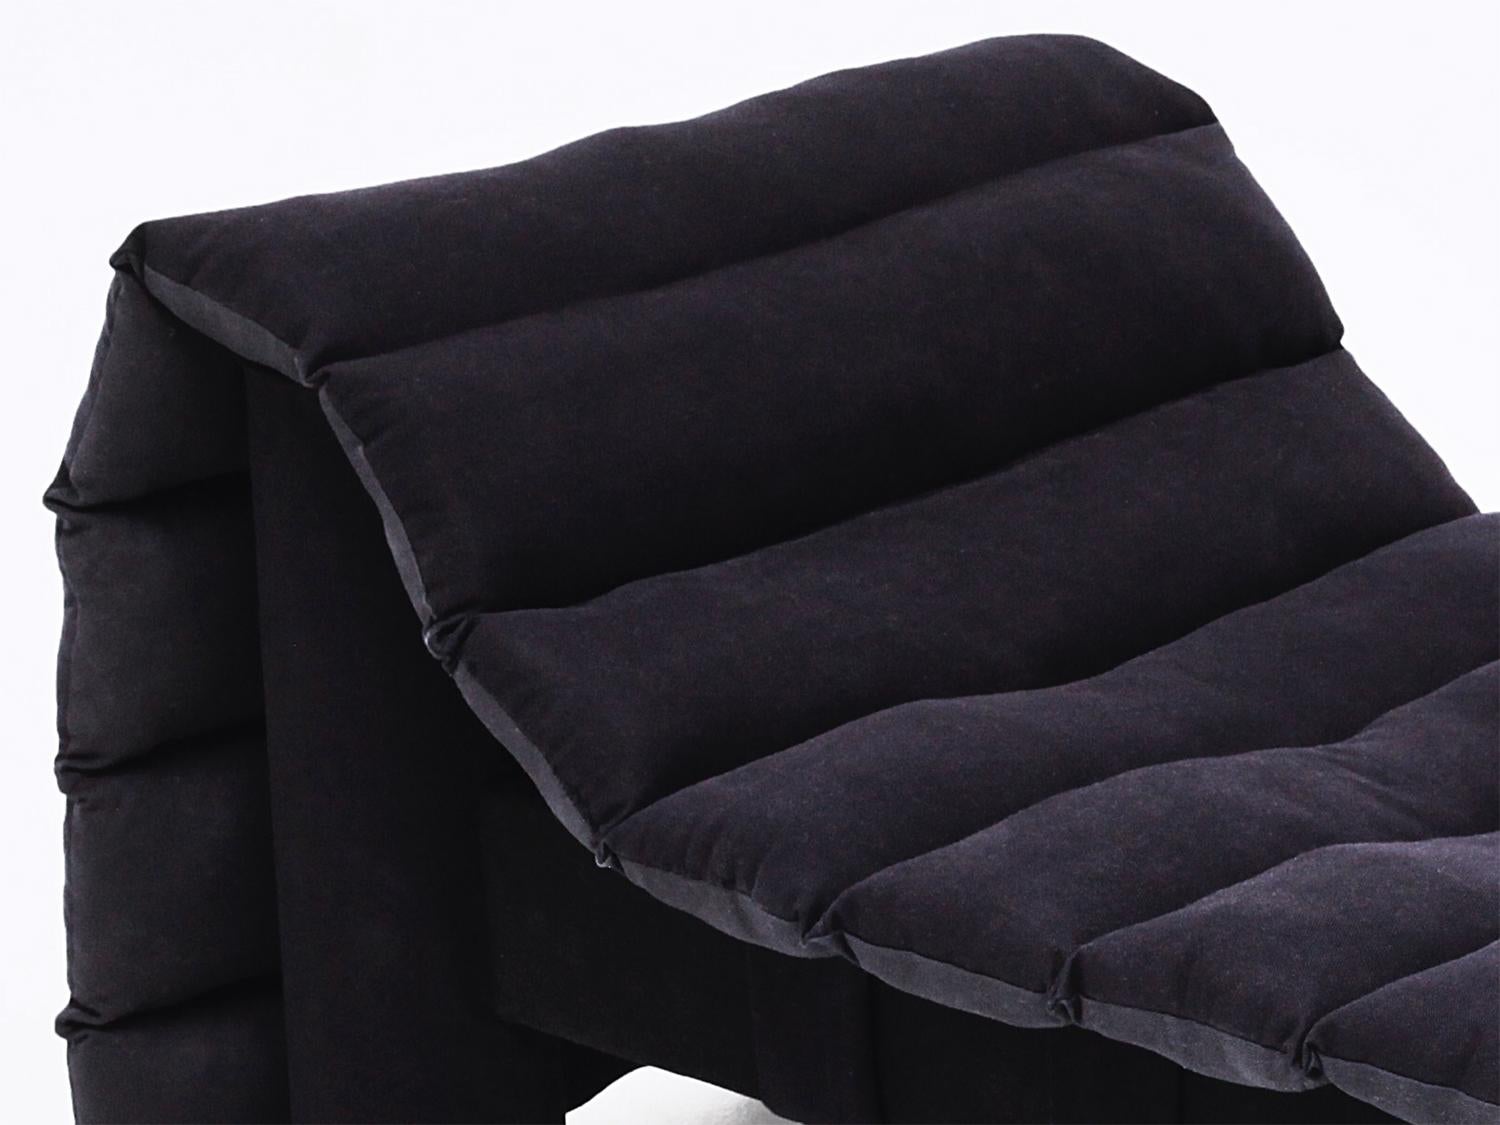 Das Roll Daybed von LikeMindedObjects ist ein modernes Sitzelement, das architektonische Formen mit Komfort verbindet. Hergestellt aus gesunden Materialien wie Bull-Denim, gepresstem Papier, Holz und geschredderter, recycelter Textilfüllung,